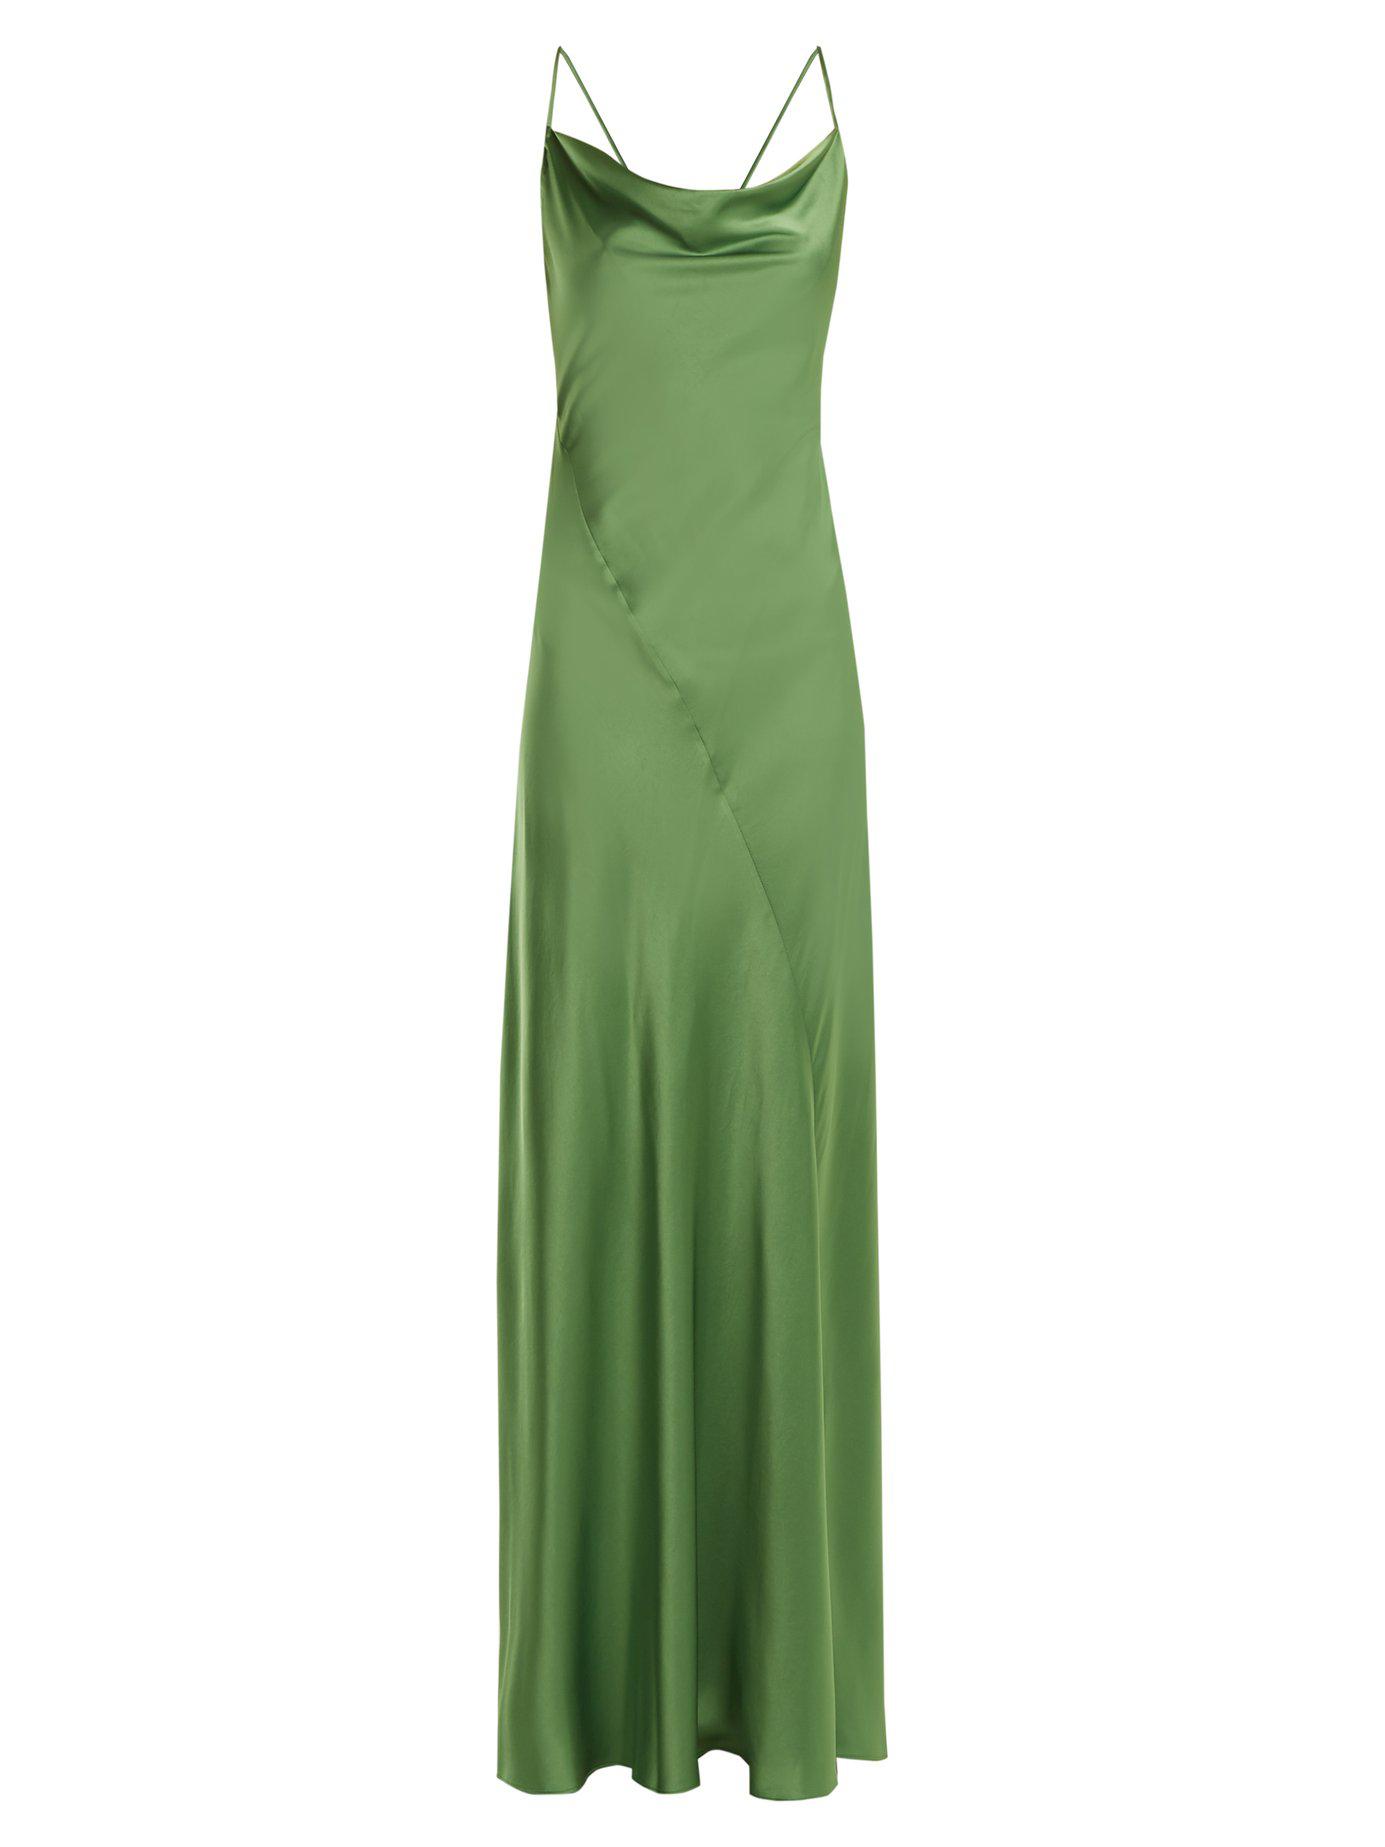 Diane von Furstenberg Bias-cut Satin Gown in Green | Lyst Canada